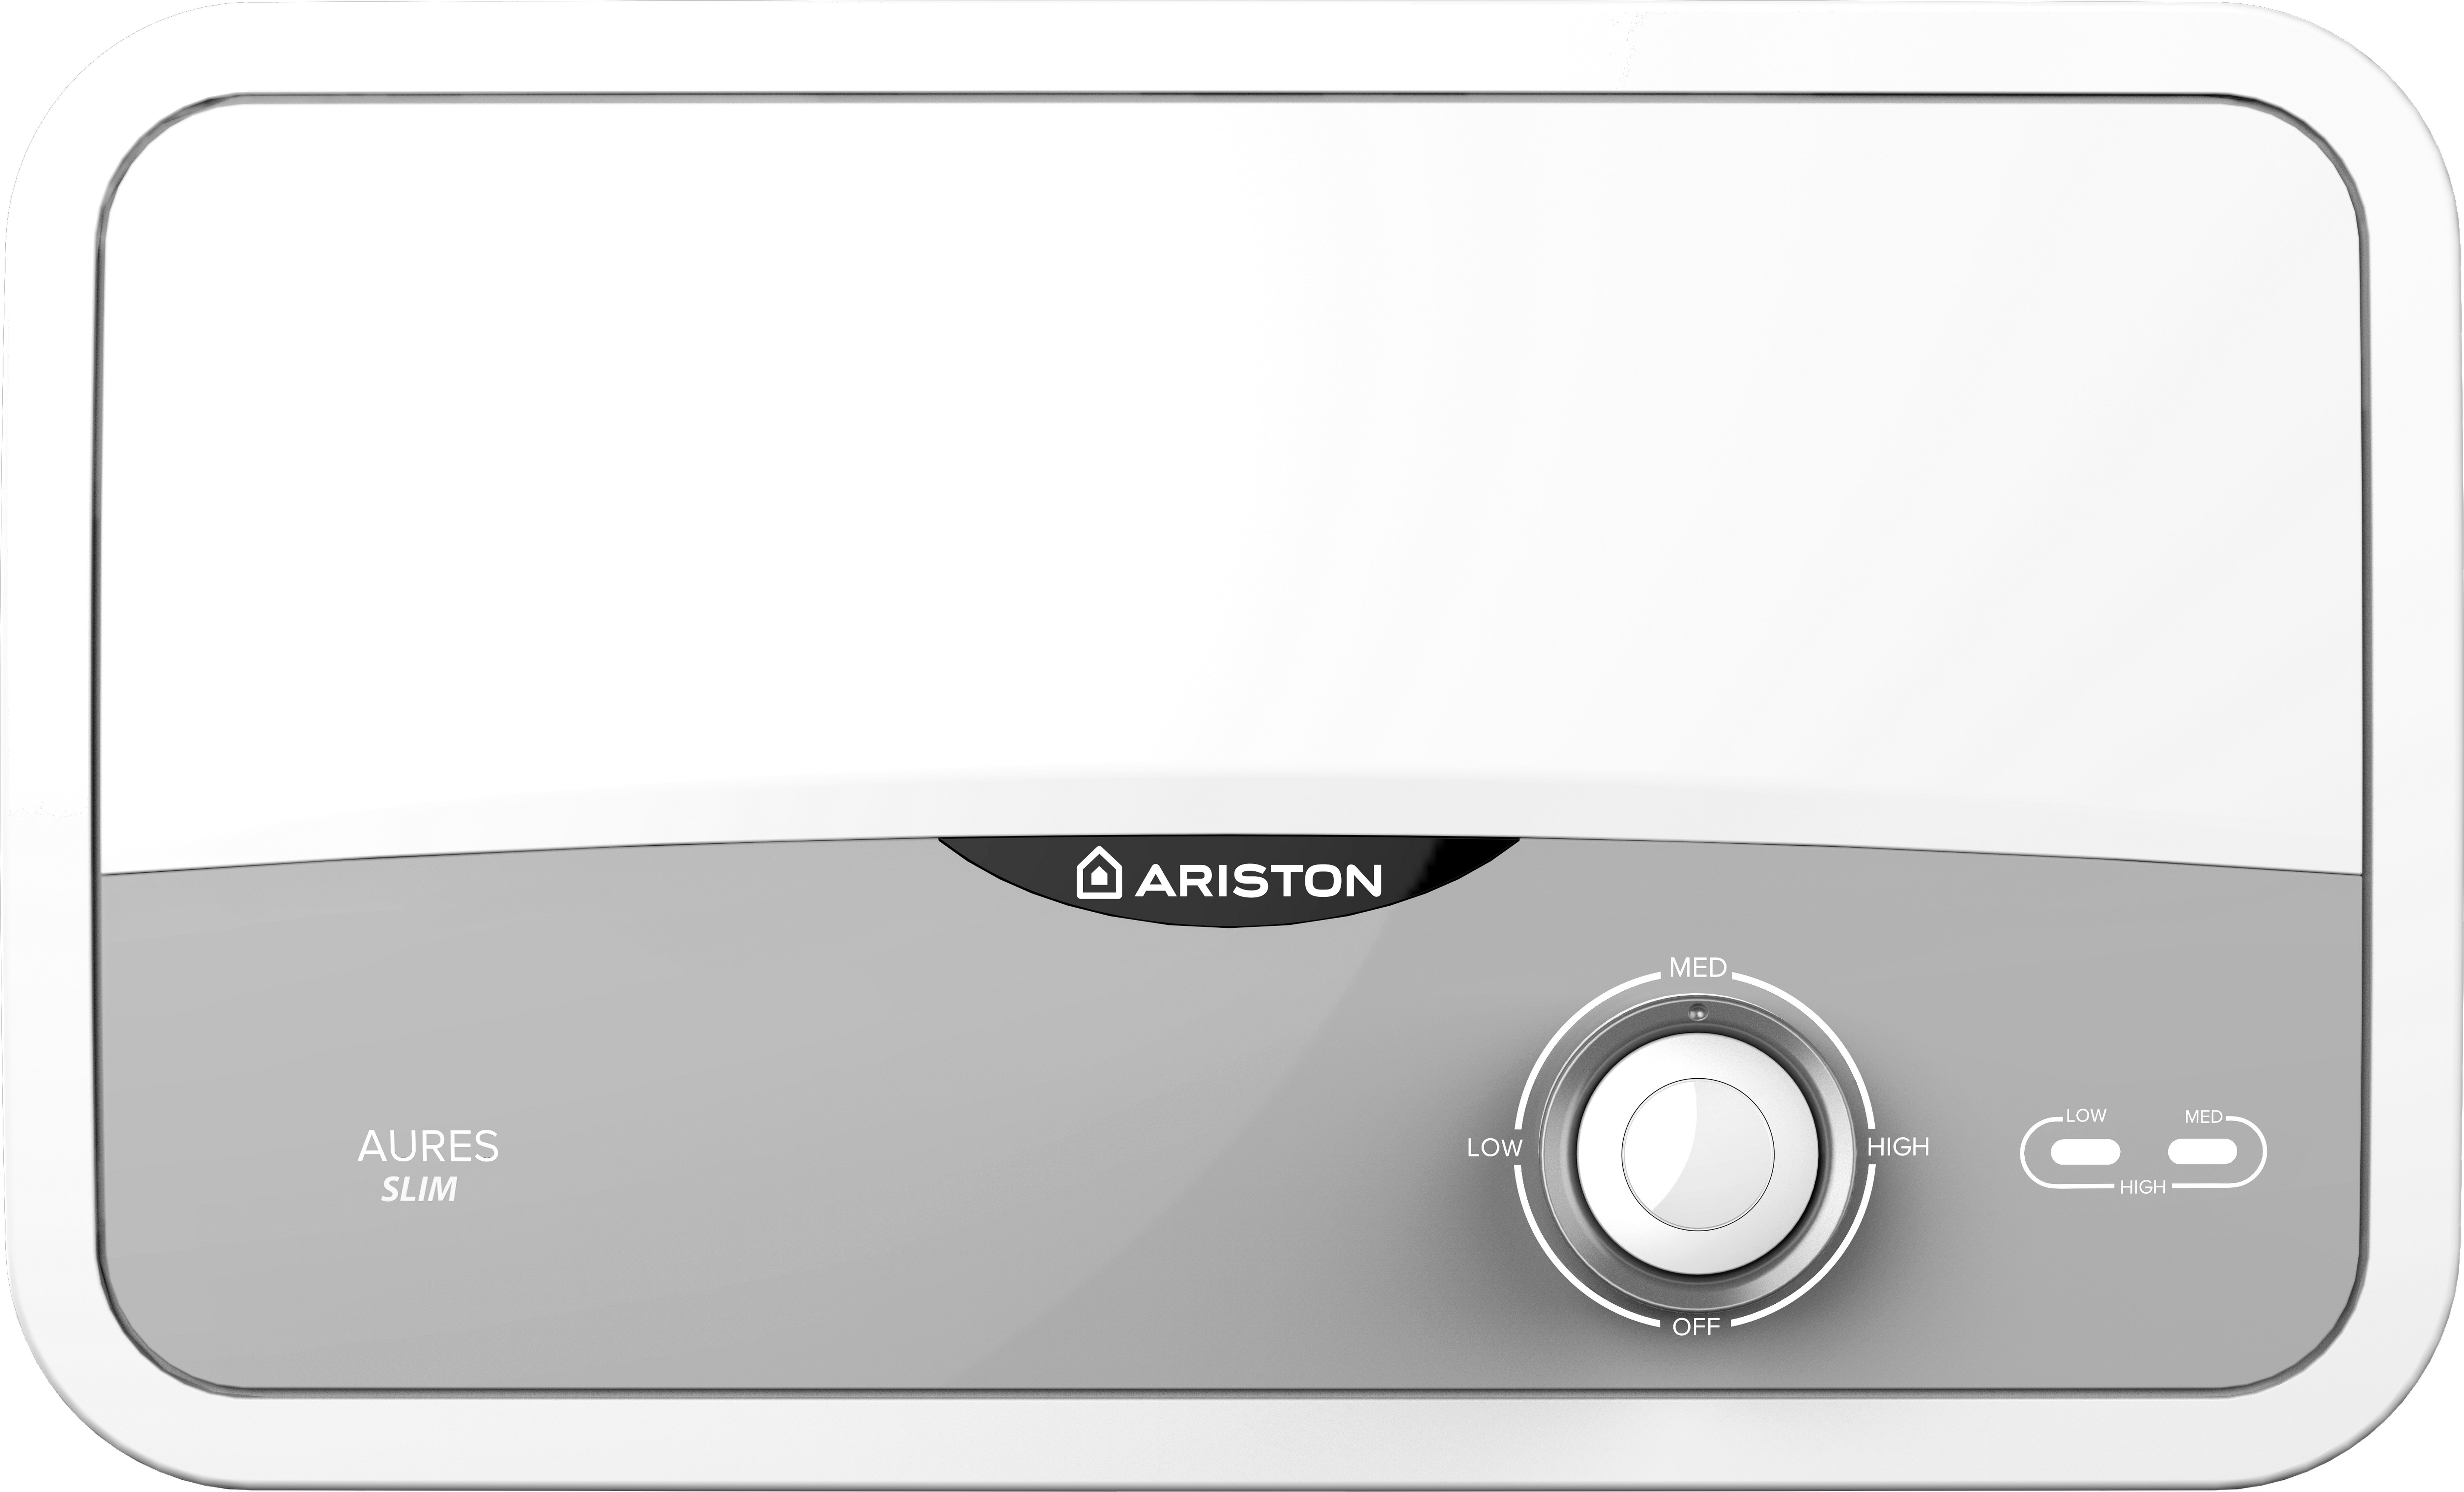 Проточный водонагреватель Ariston Aures S 3.5 COM PL в интернет-магазине, главное фото